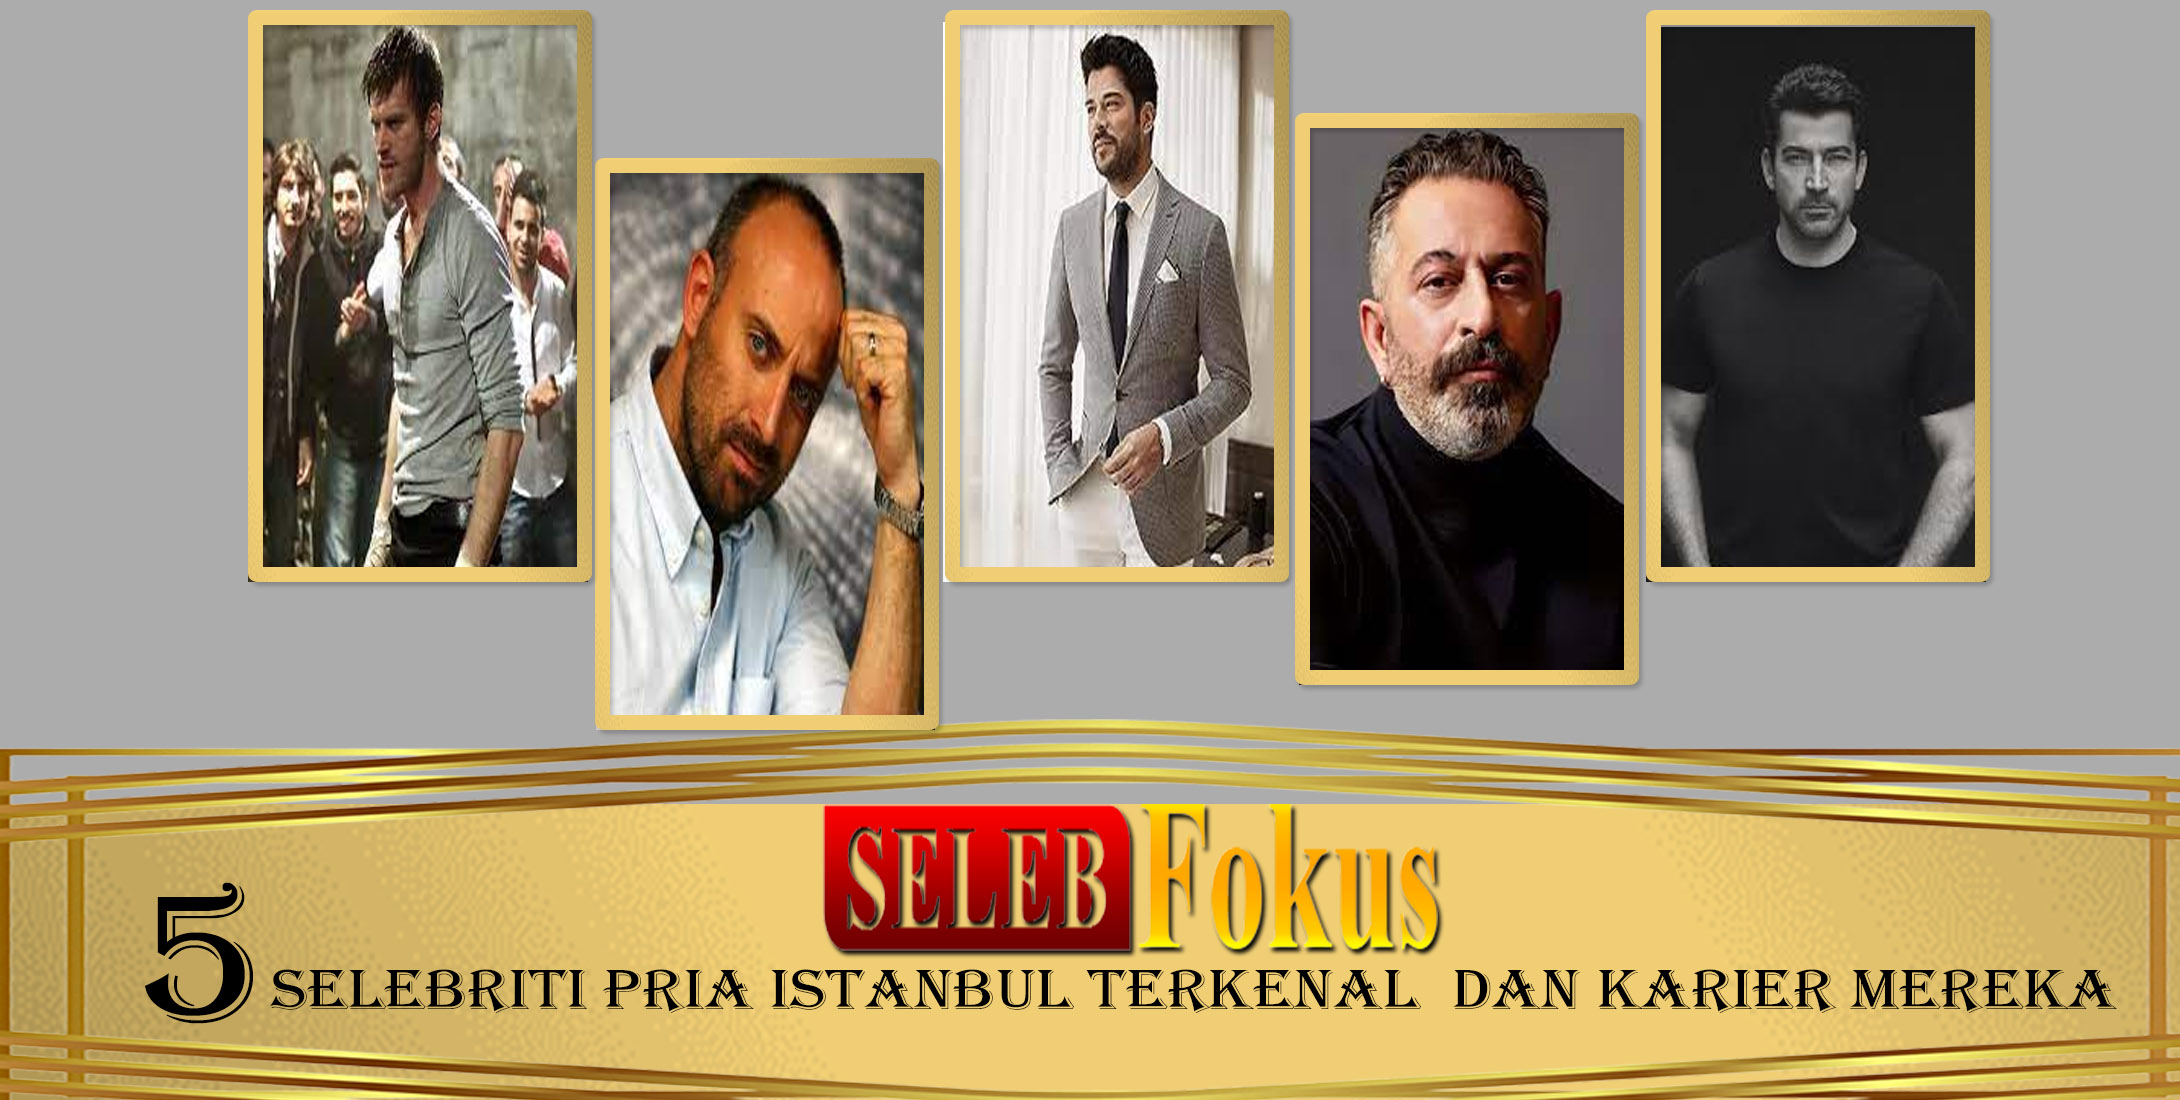 5 Selebriti Pria Istanbul Terkenal  dan Karier Mereka